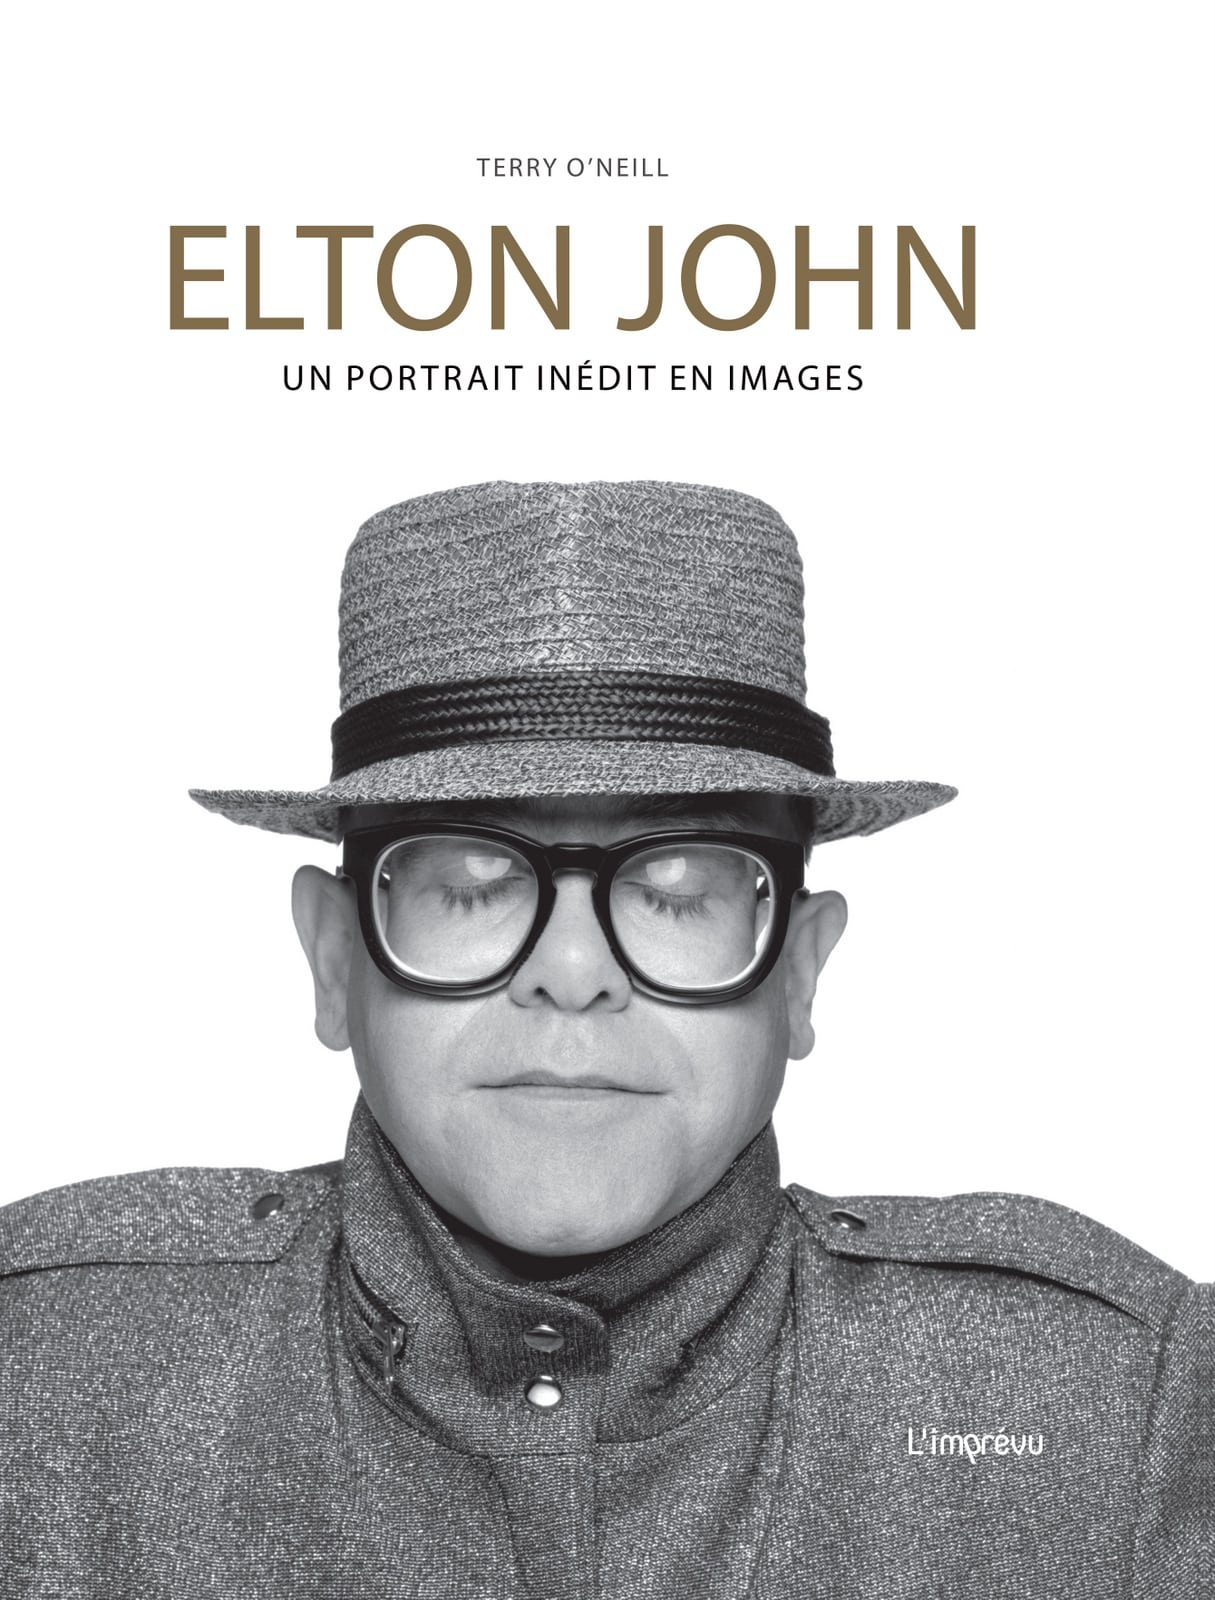 ELTON JOHN, UN PORTRAIT INEDIT EN IMAGES